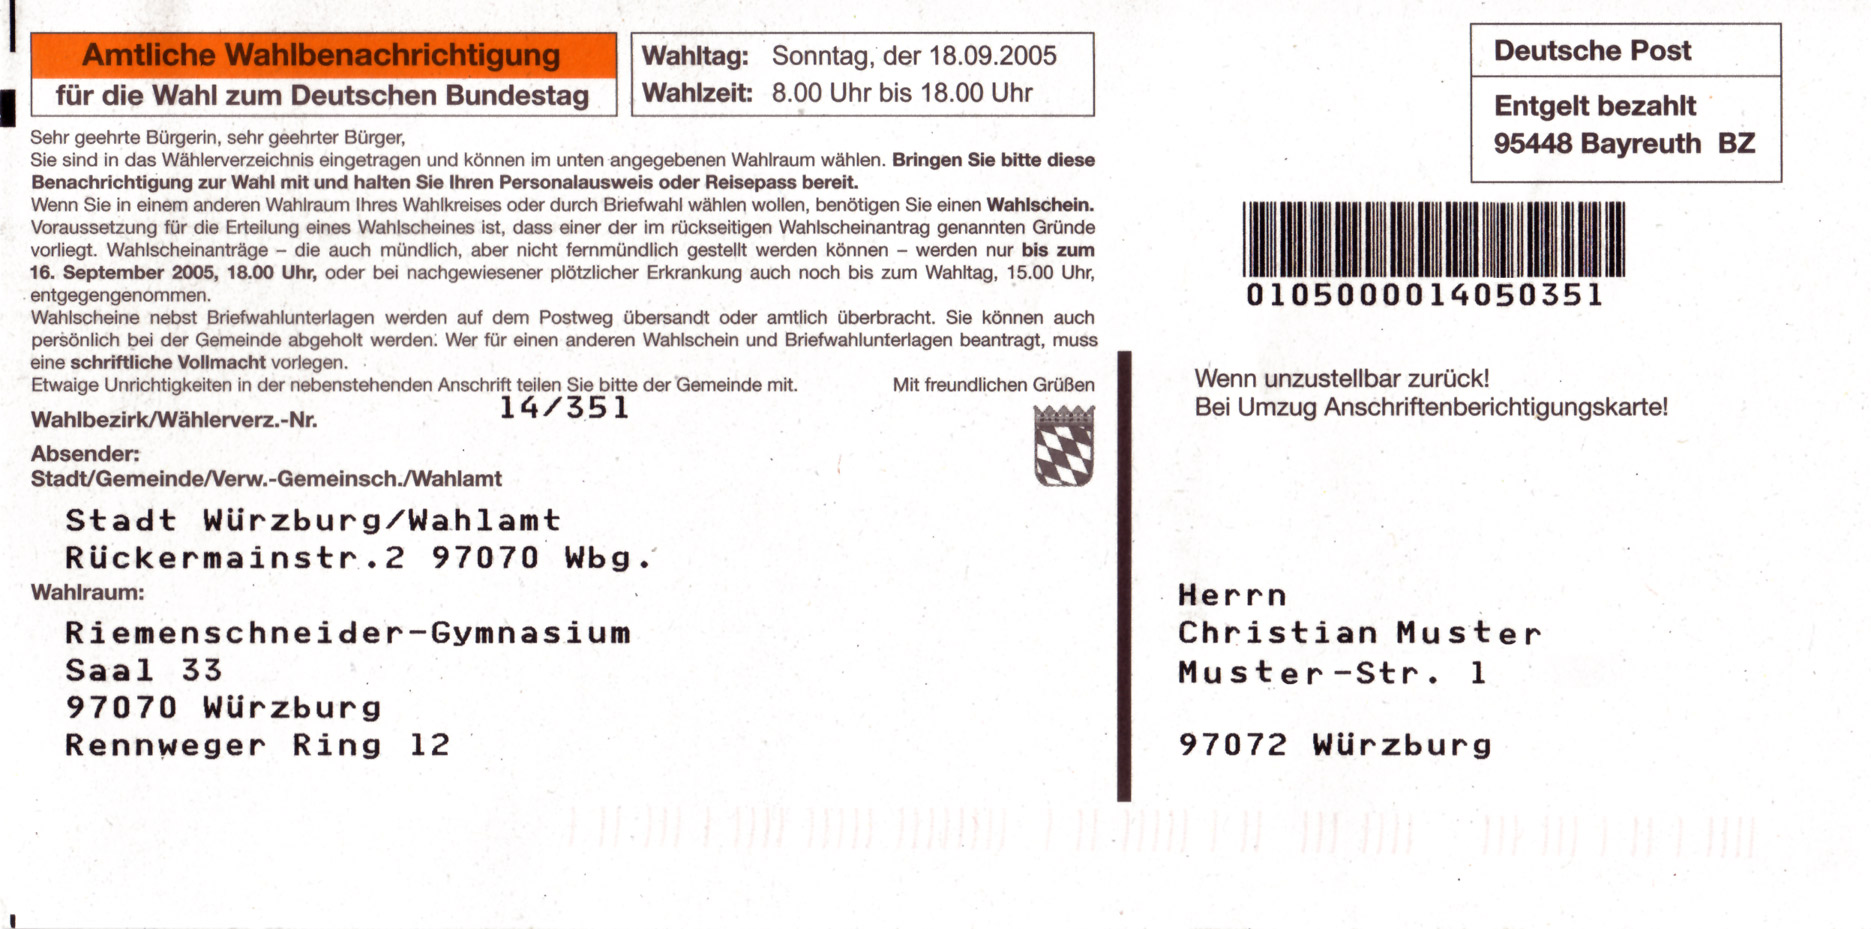 Auf dem Bild ist eine Wahlbenachrichtigung zu sehen. Genau ist es eine Wahlbenachrichtigung für die Bundestagswahl im Jahr 2005.